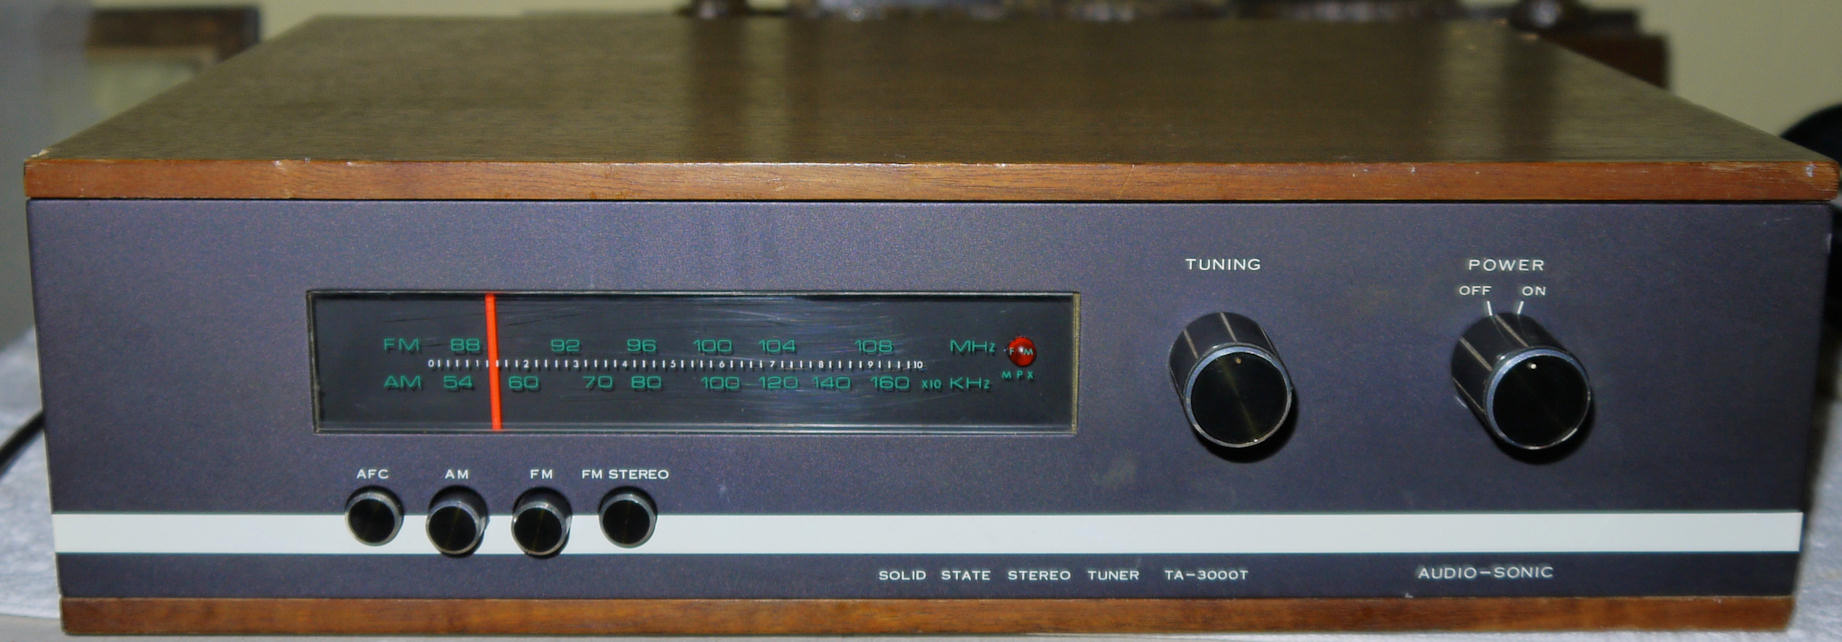 Luxman Tuner Vintage Hi-fi Luxman T120l 